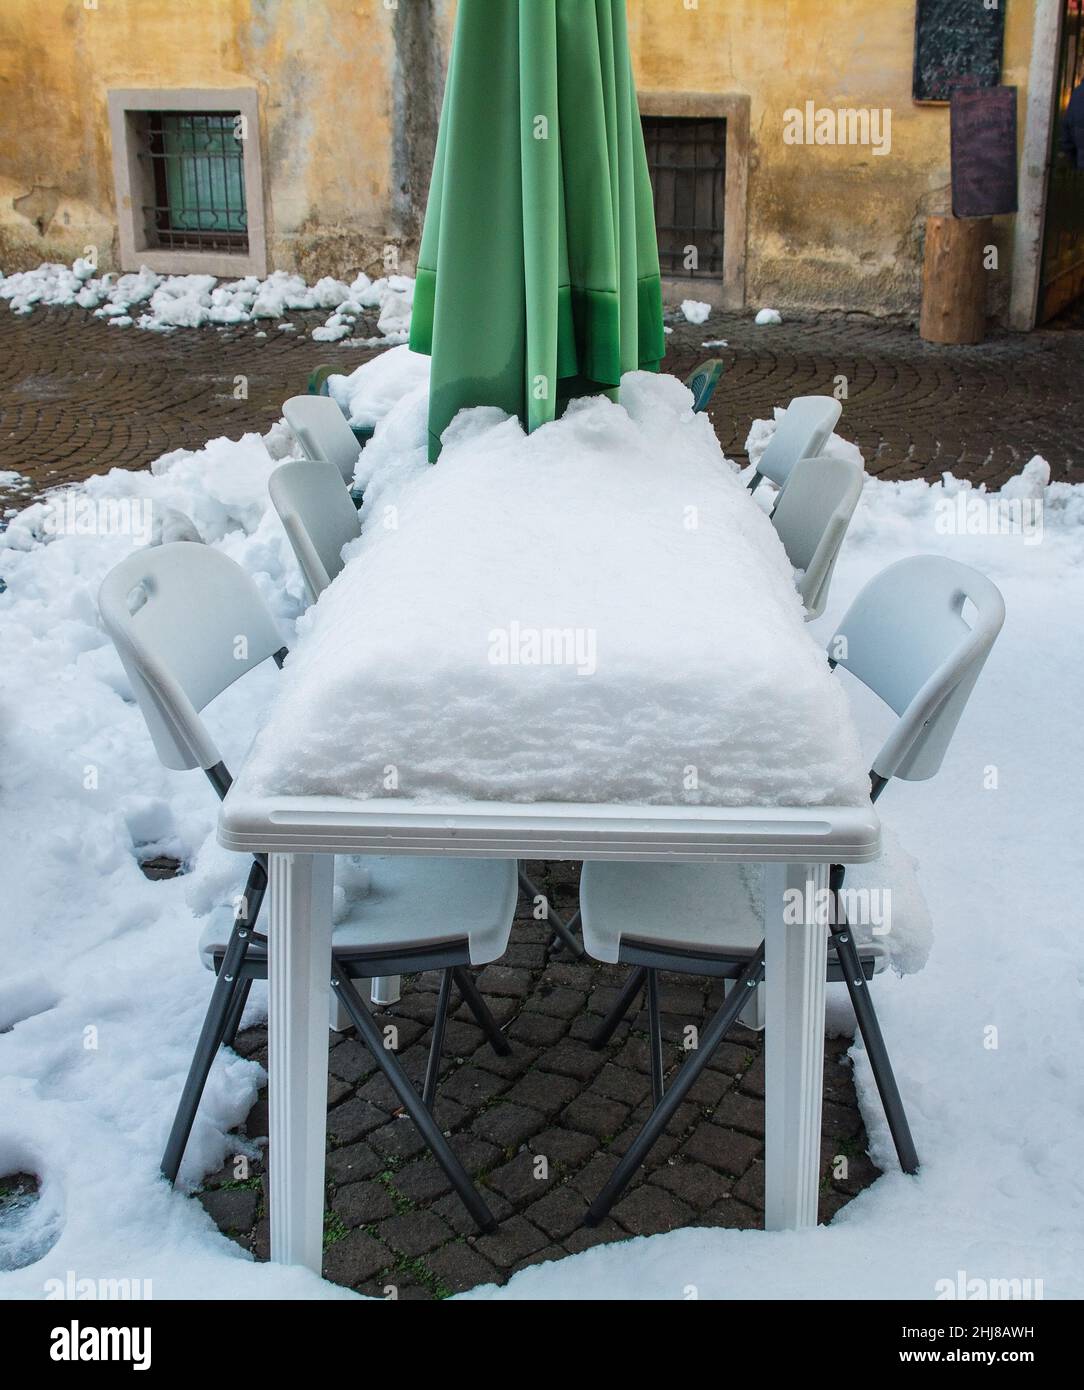 Une épaisse couche de neige recouvre une table et des chaises devant un restaurant dans le centre historique de la ville italienne du nord-est de Belluno, région de la Vénétie.Décembre Banque D'Images